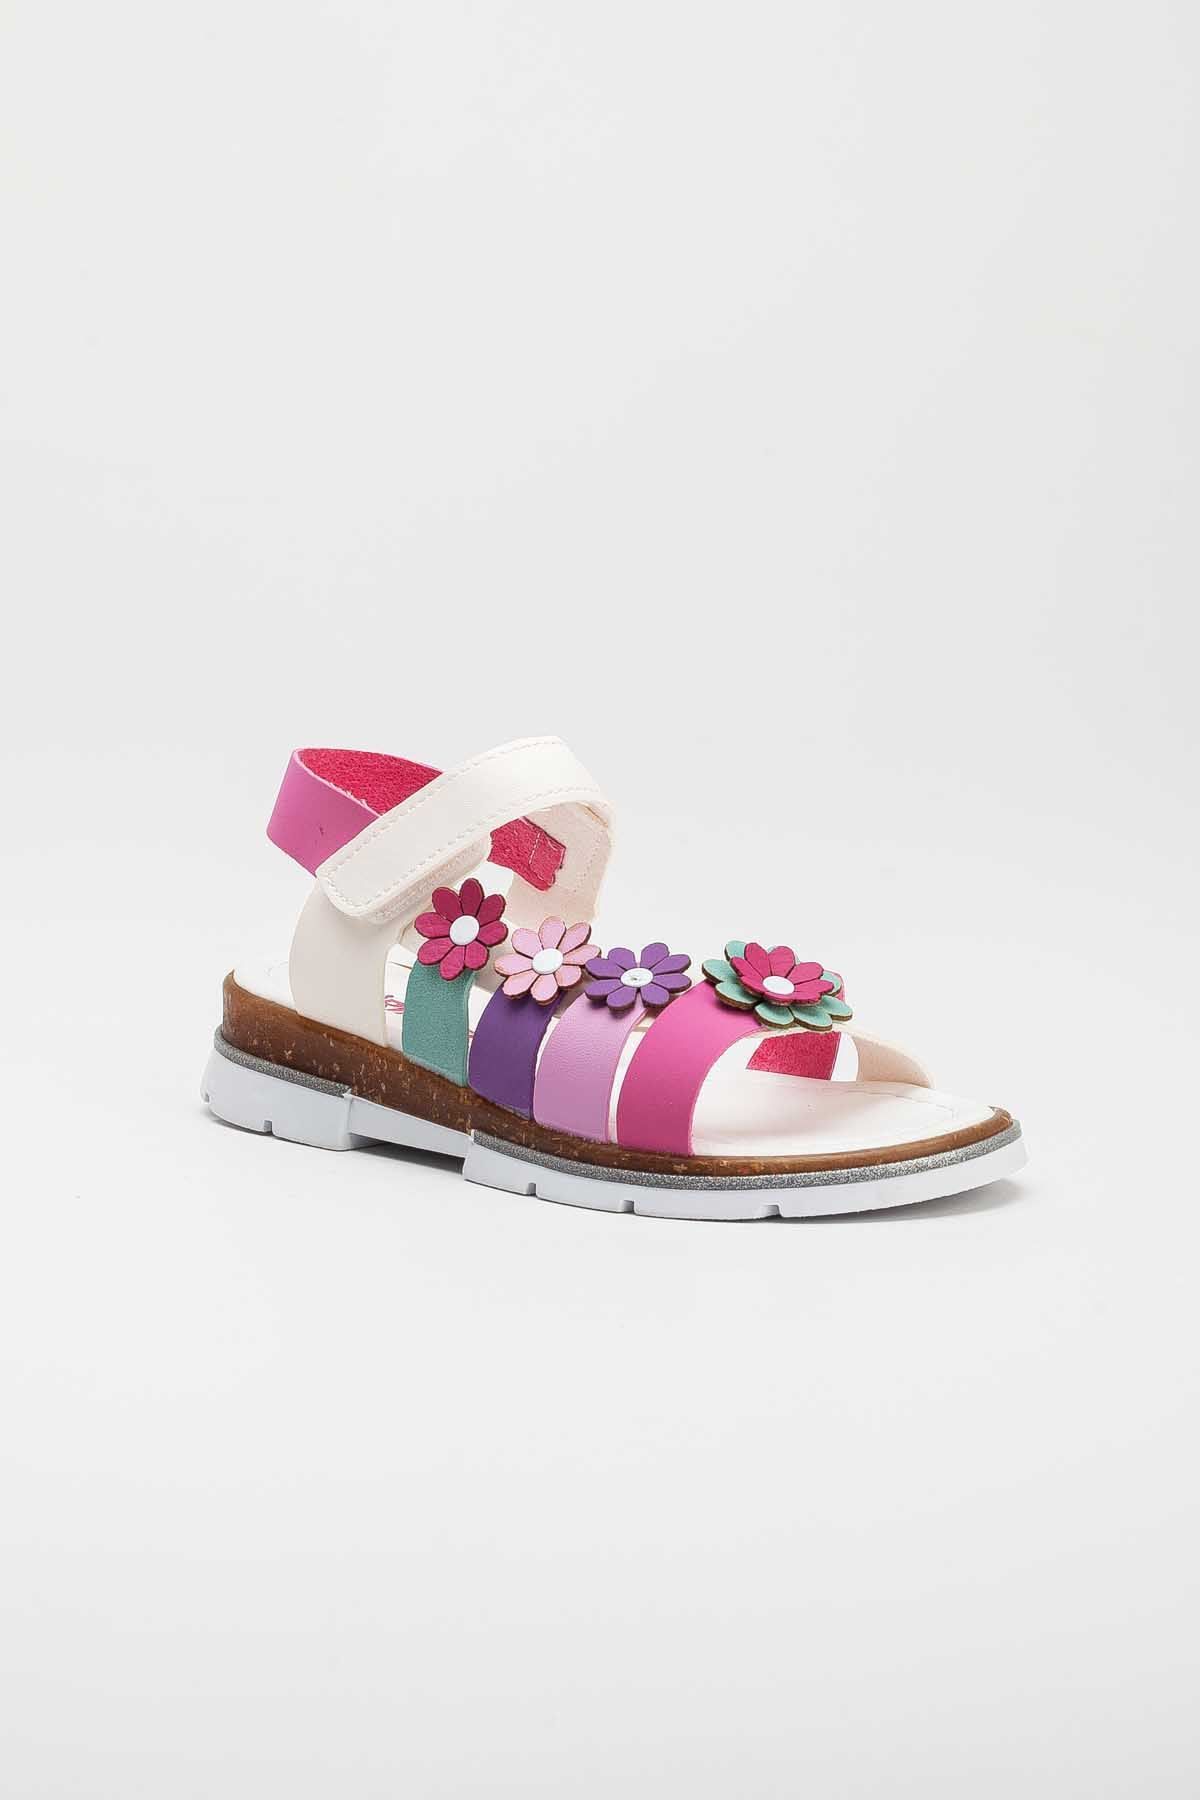 İeg Perla Kids Kız Çocuk Ortopedik Çiçek Detaylı Sandalet(26-36 Num.)